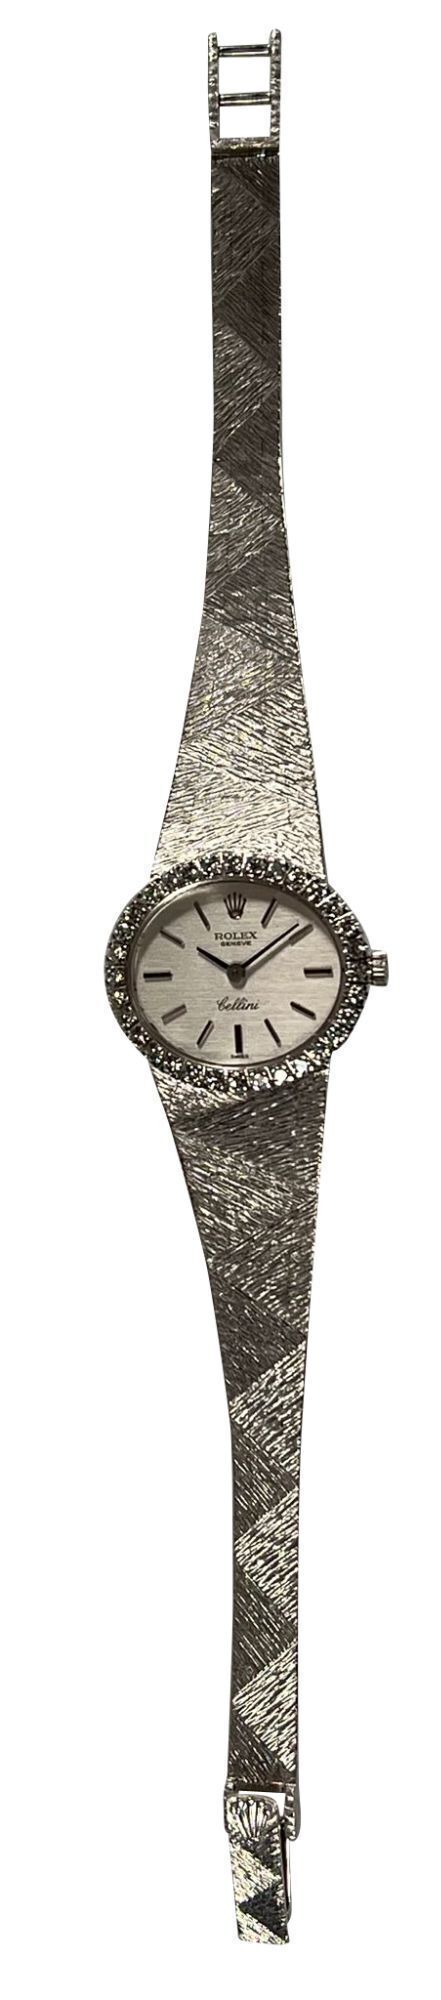 Rolex Cellini Ref. 639 18K White Gold Dress Watch with Diamond Bezel - 2